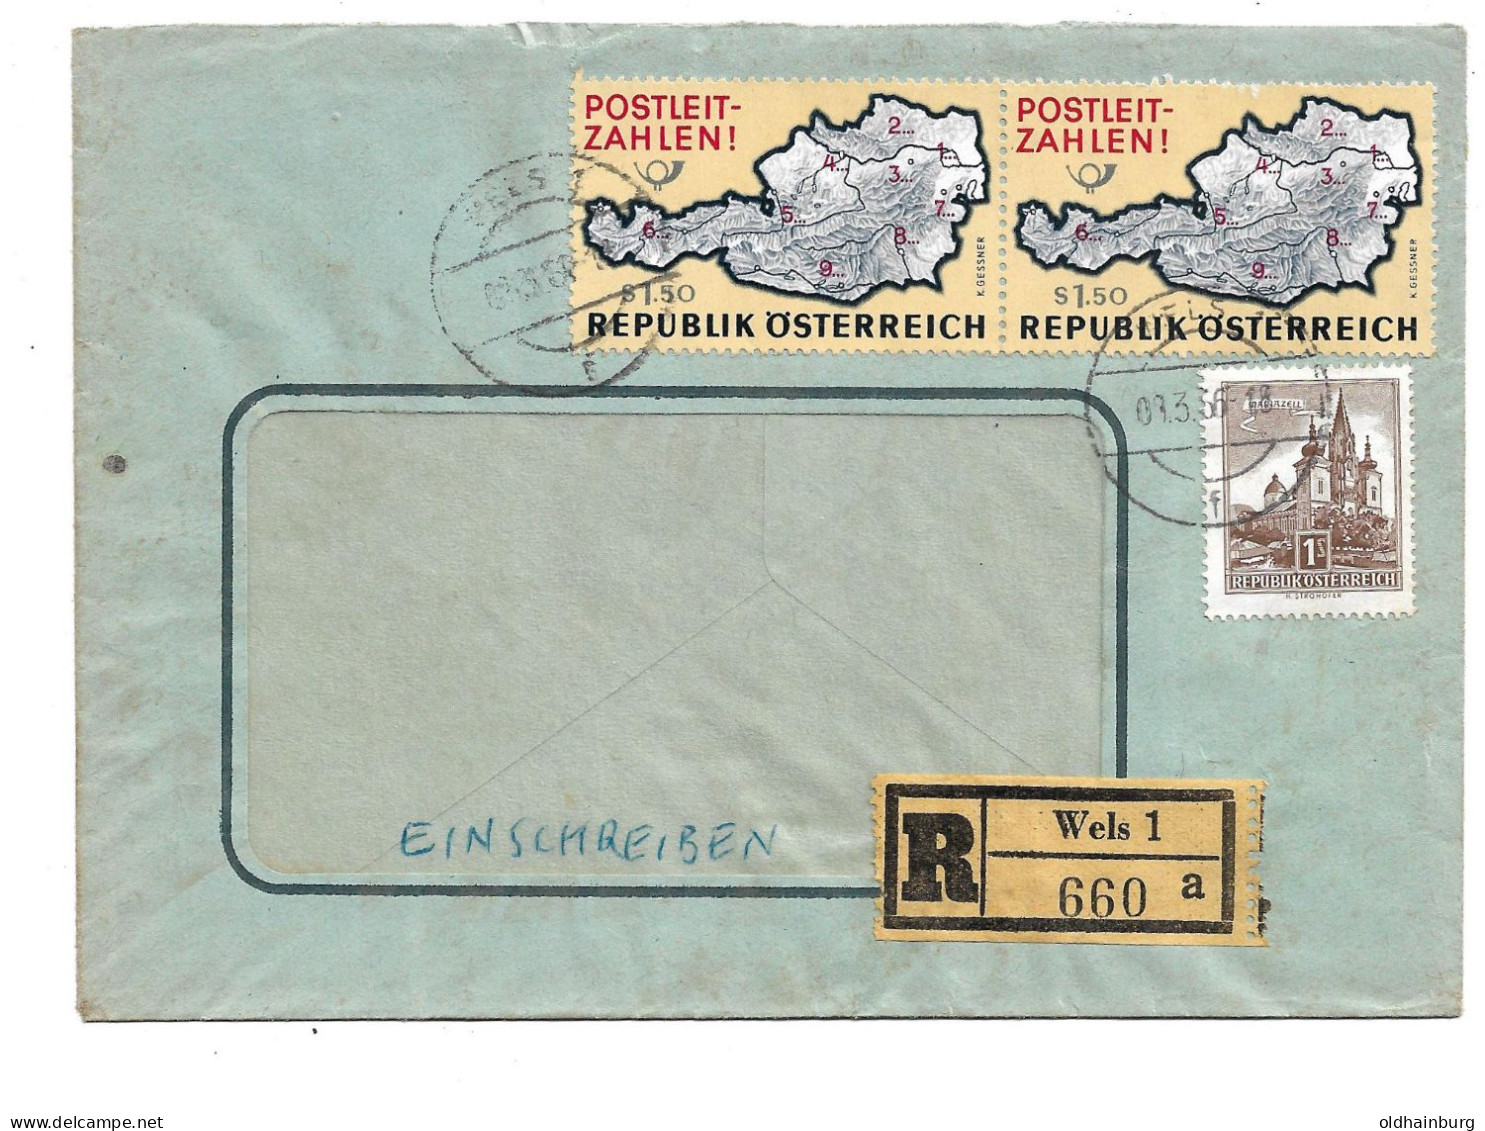 0415n: Österreich 1966, Postleitzahlen- Marke Auf Rekobrief Wels 1 - Postcode